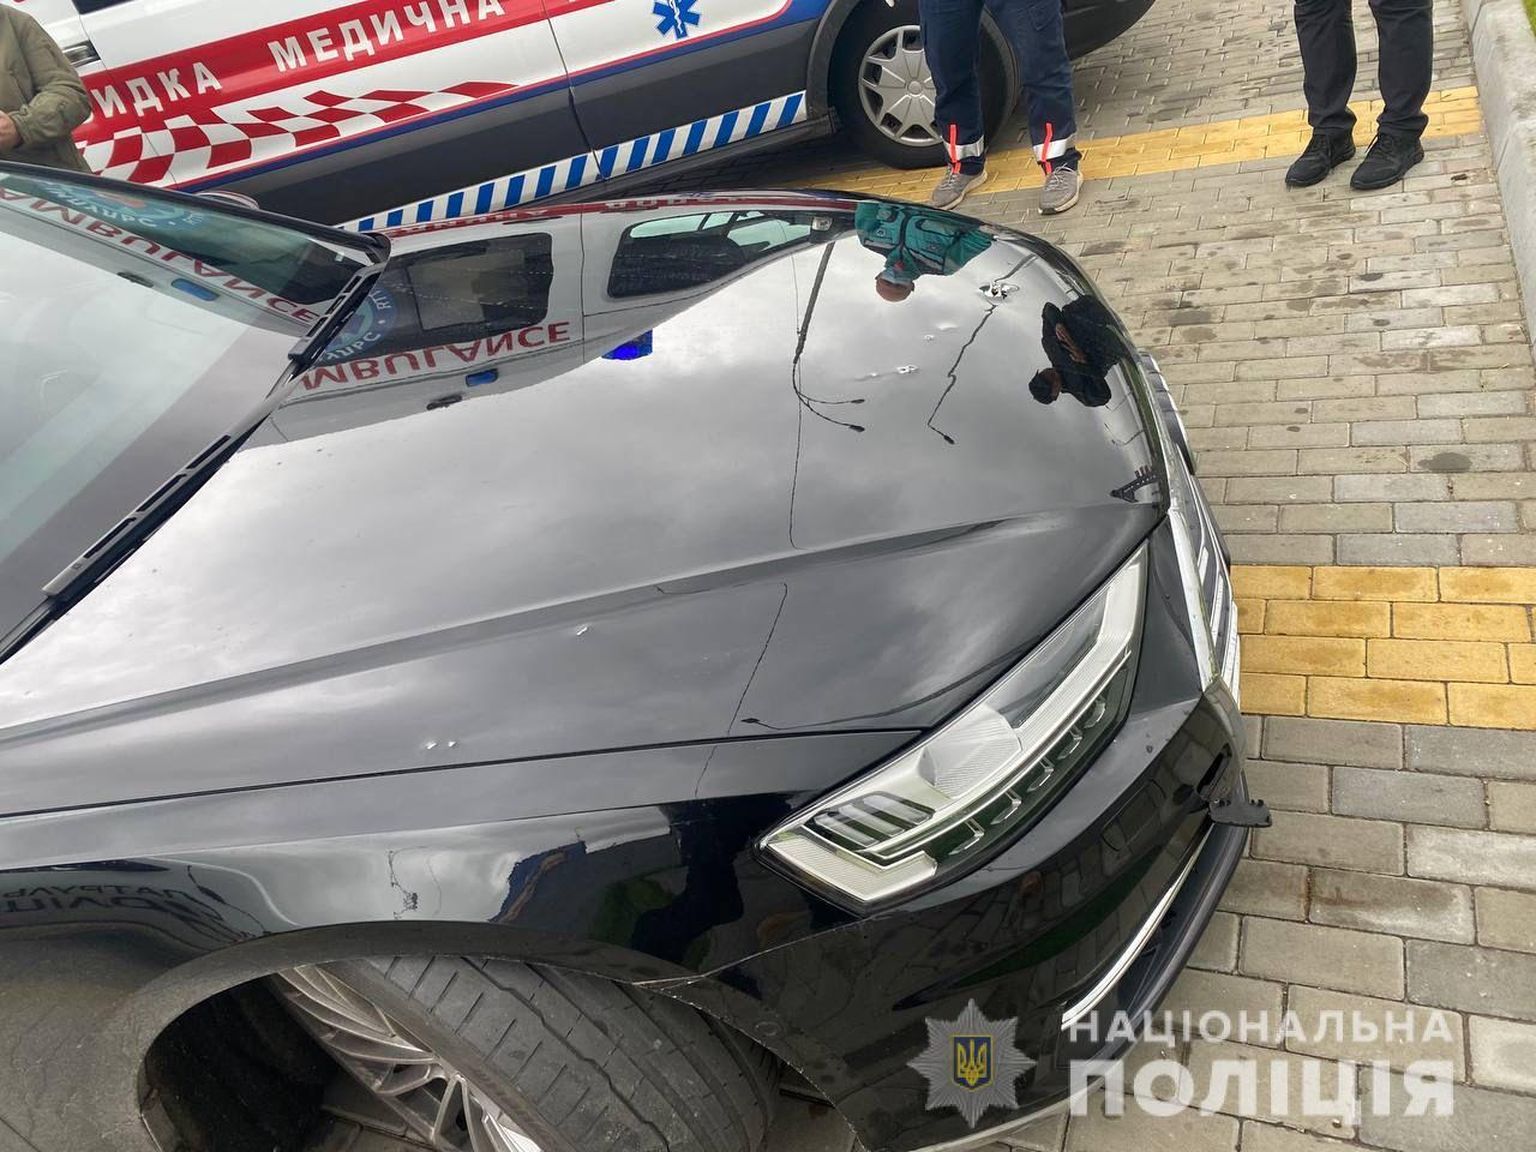 Tulistamises pihta saanud Ukraina presidendi nõuniku auto.